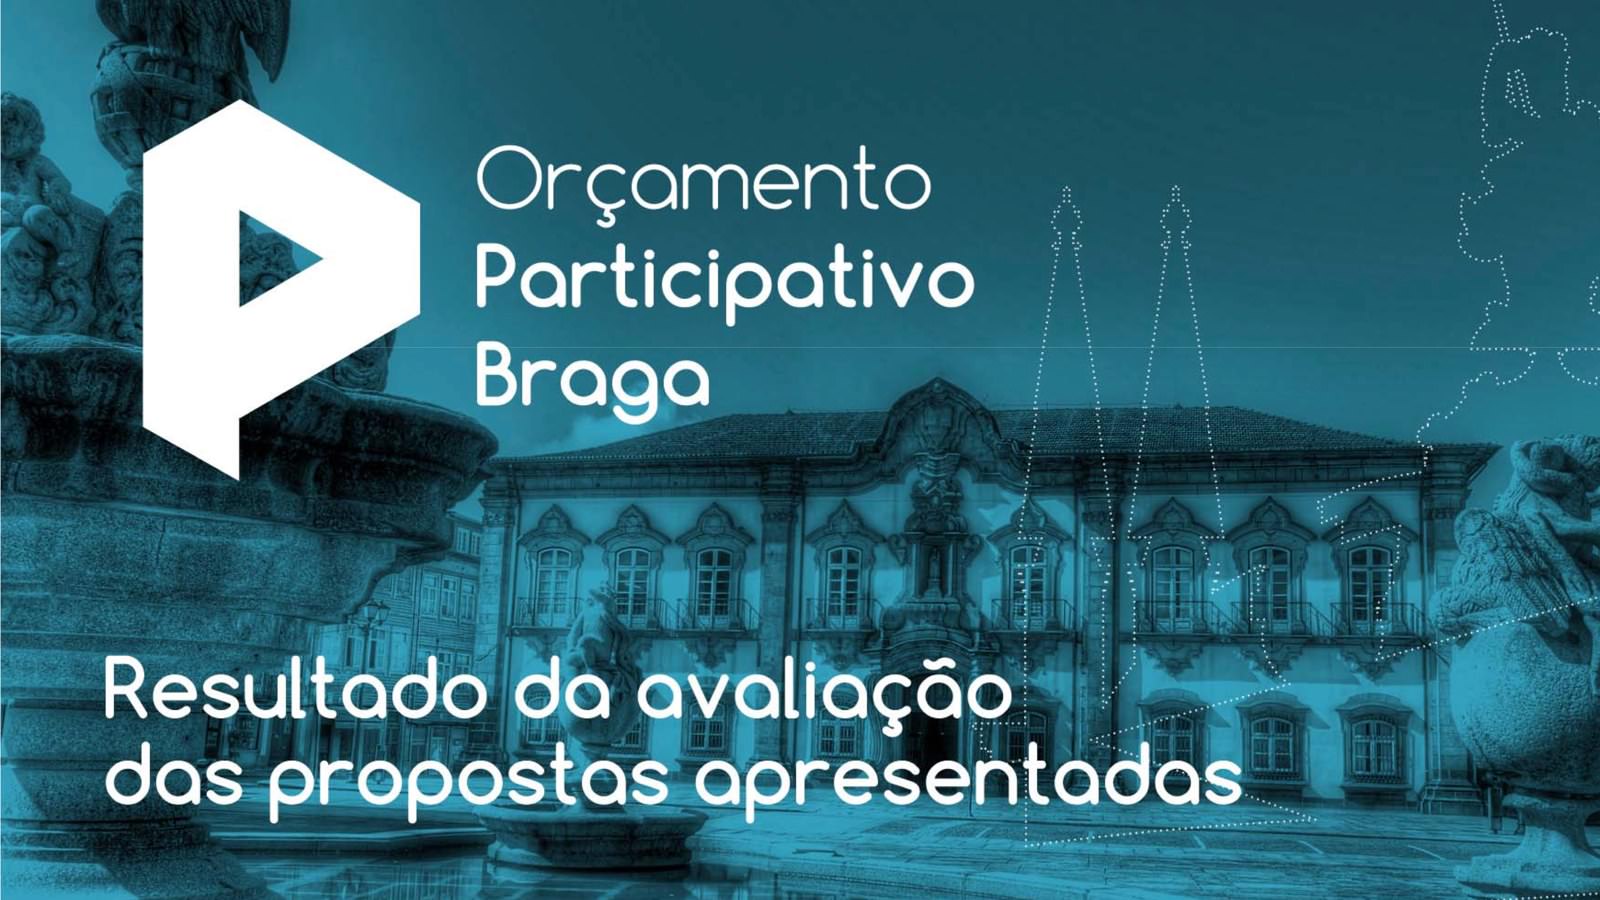 Resultado da avaliação - Orçamento Participativo Braga